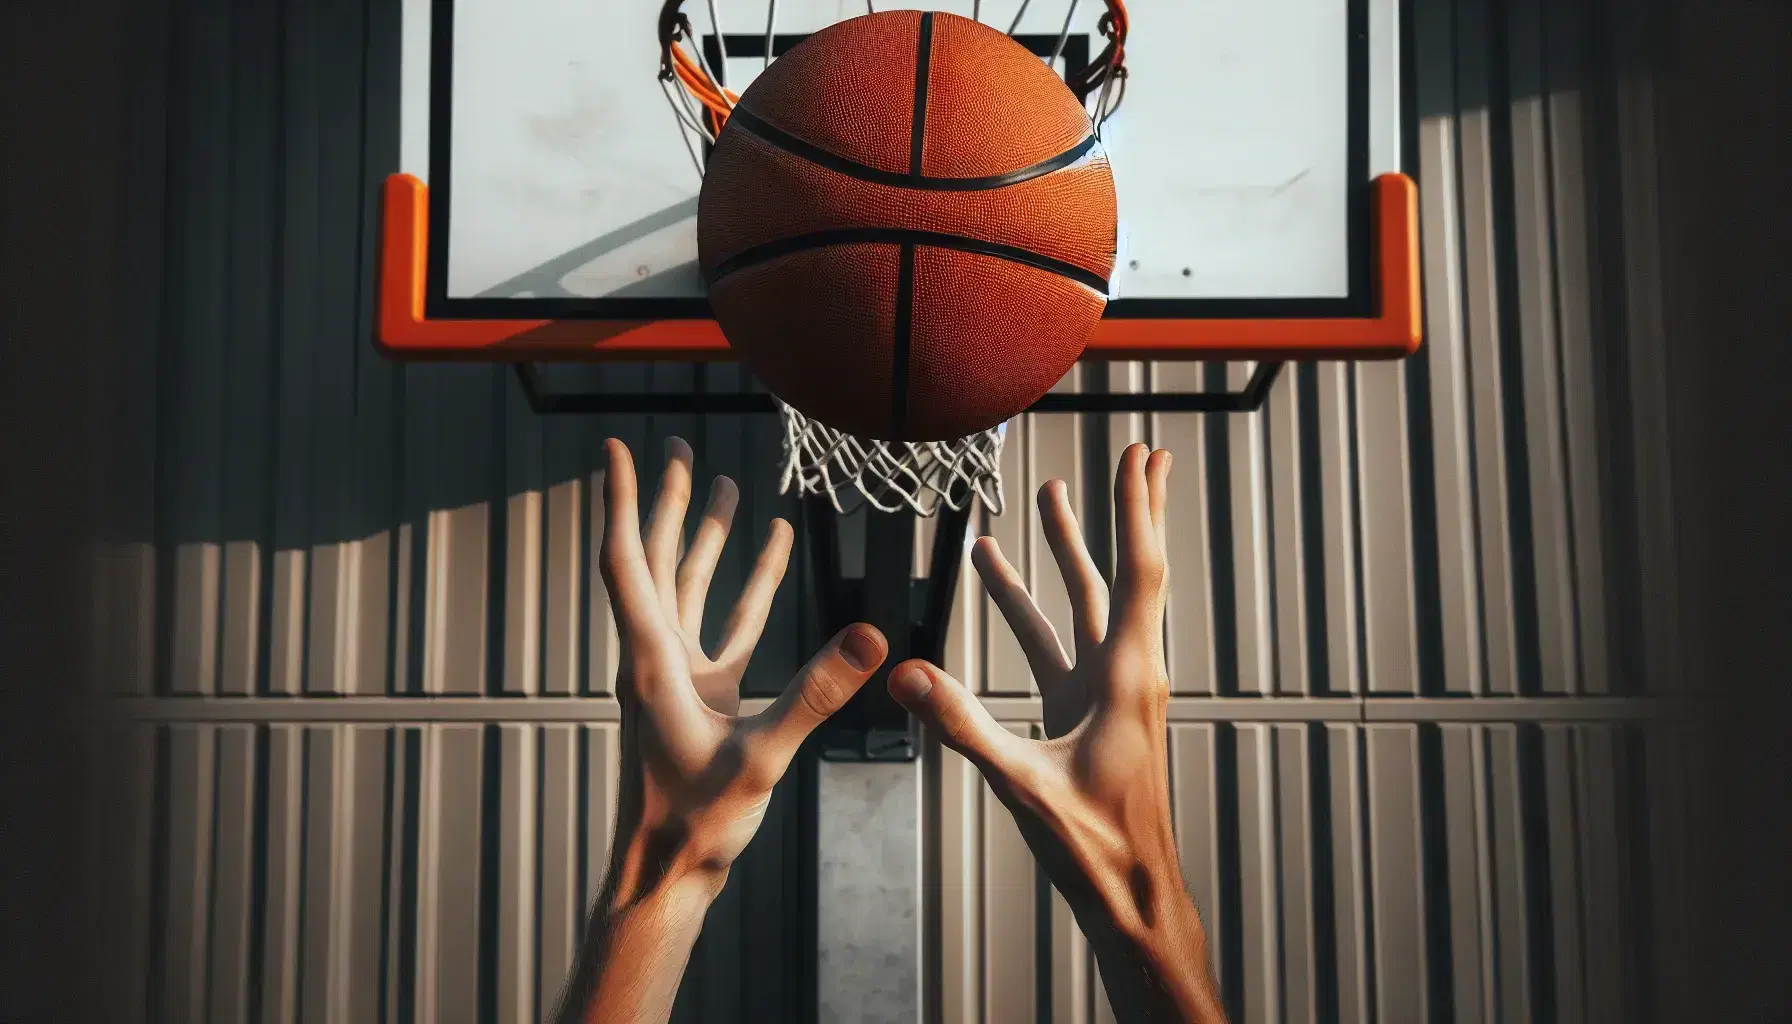 Manos preparadas para atrapar un balón de baloncesto en el aire con aro de fondo, destacando la acción y habilidad en el juego.